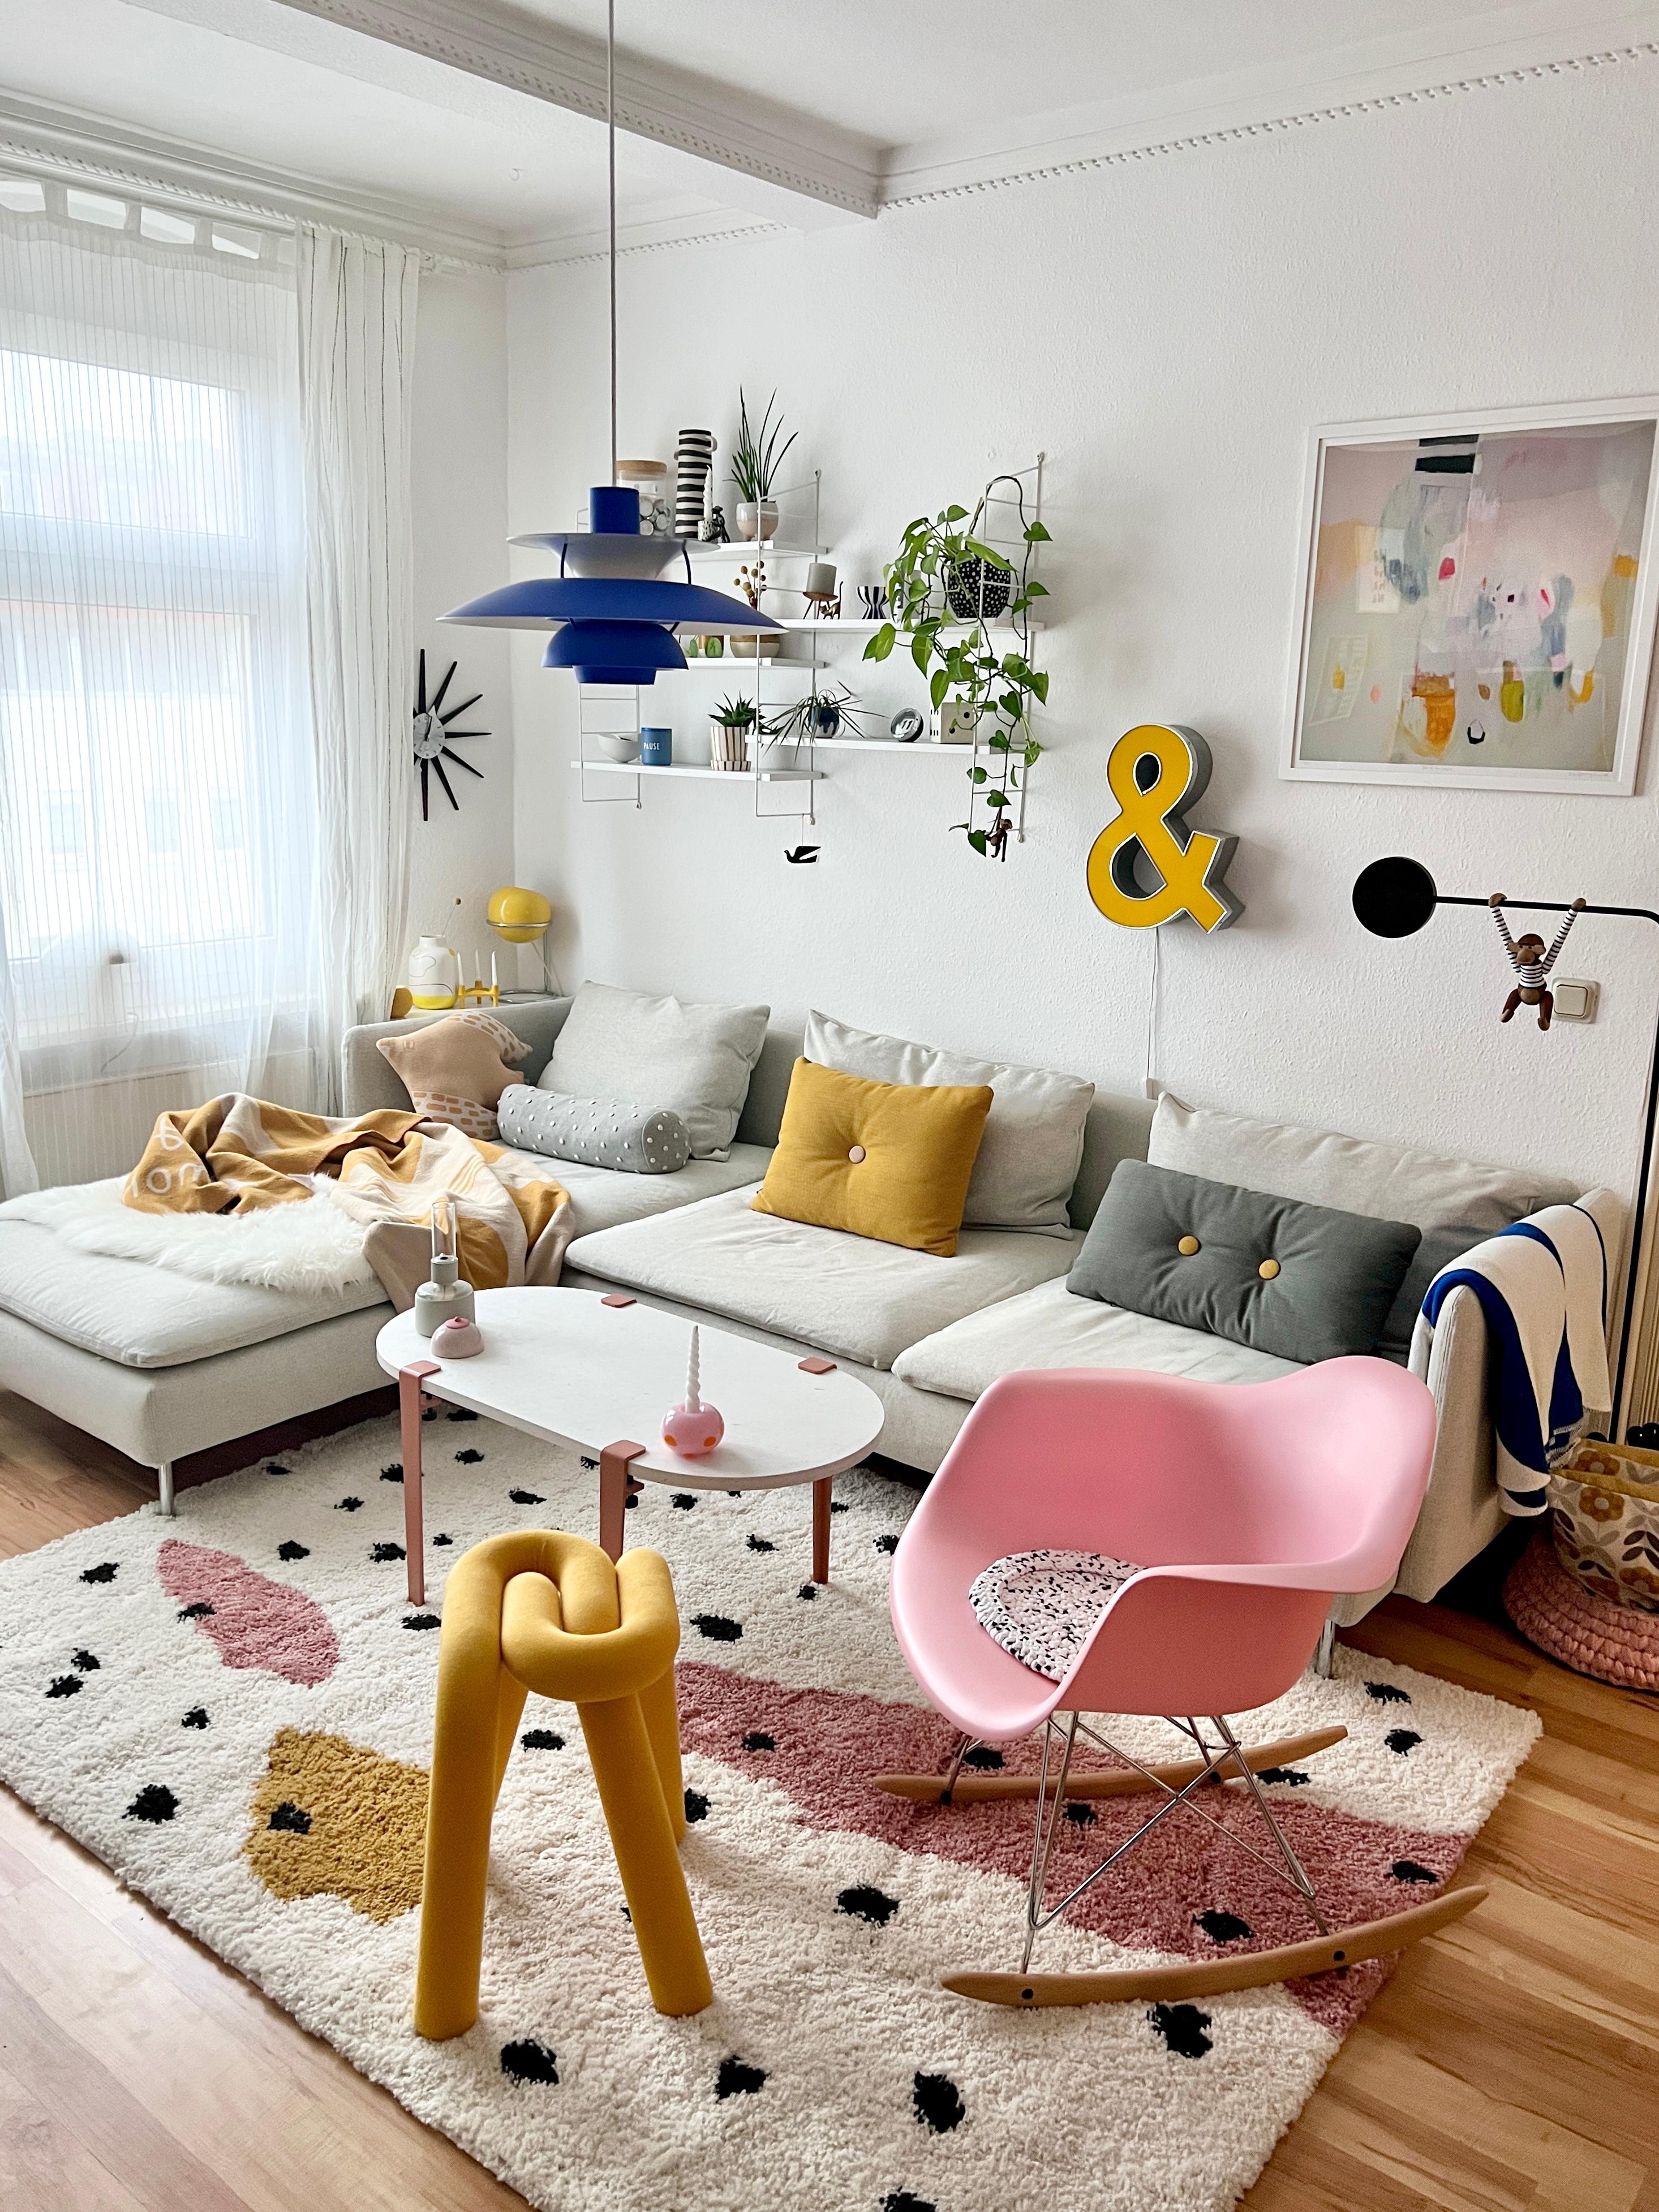 #interior #interiordesign #couchliebt #wohnzimmer #umgestaltung #springvibes #gelb #rosa